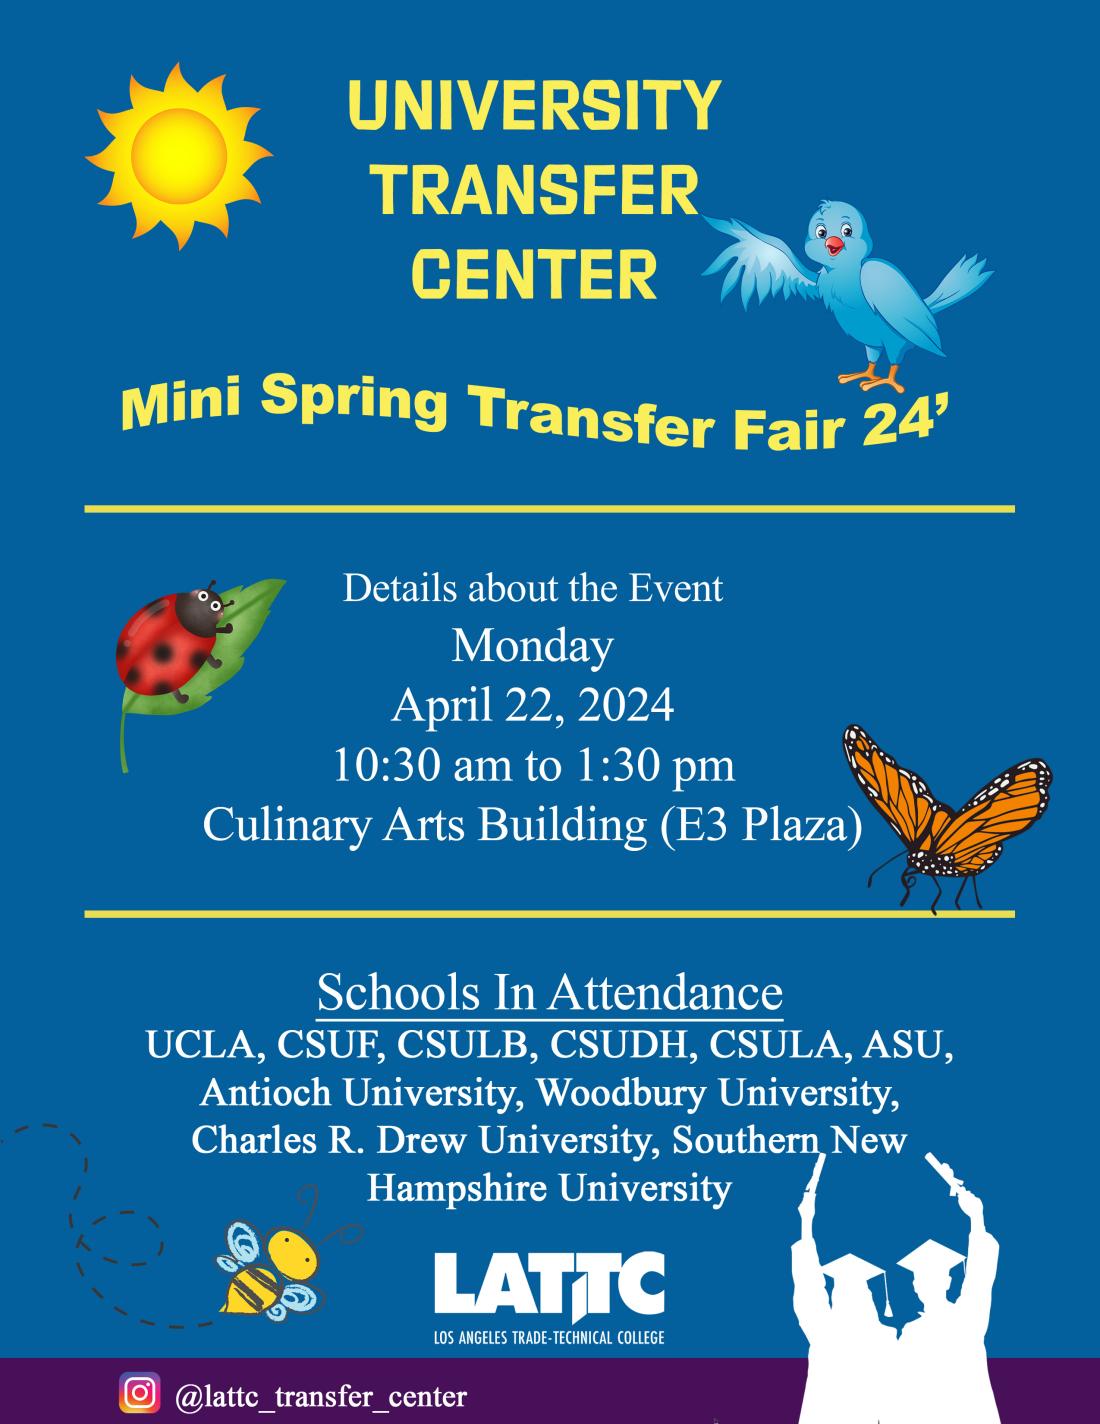 University Transfer Center Mini Spring Transfer Fair flyer